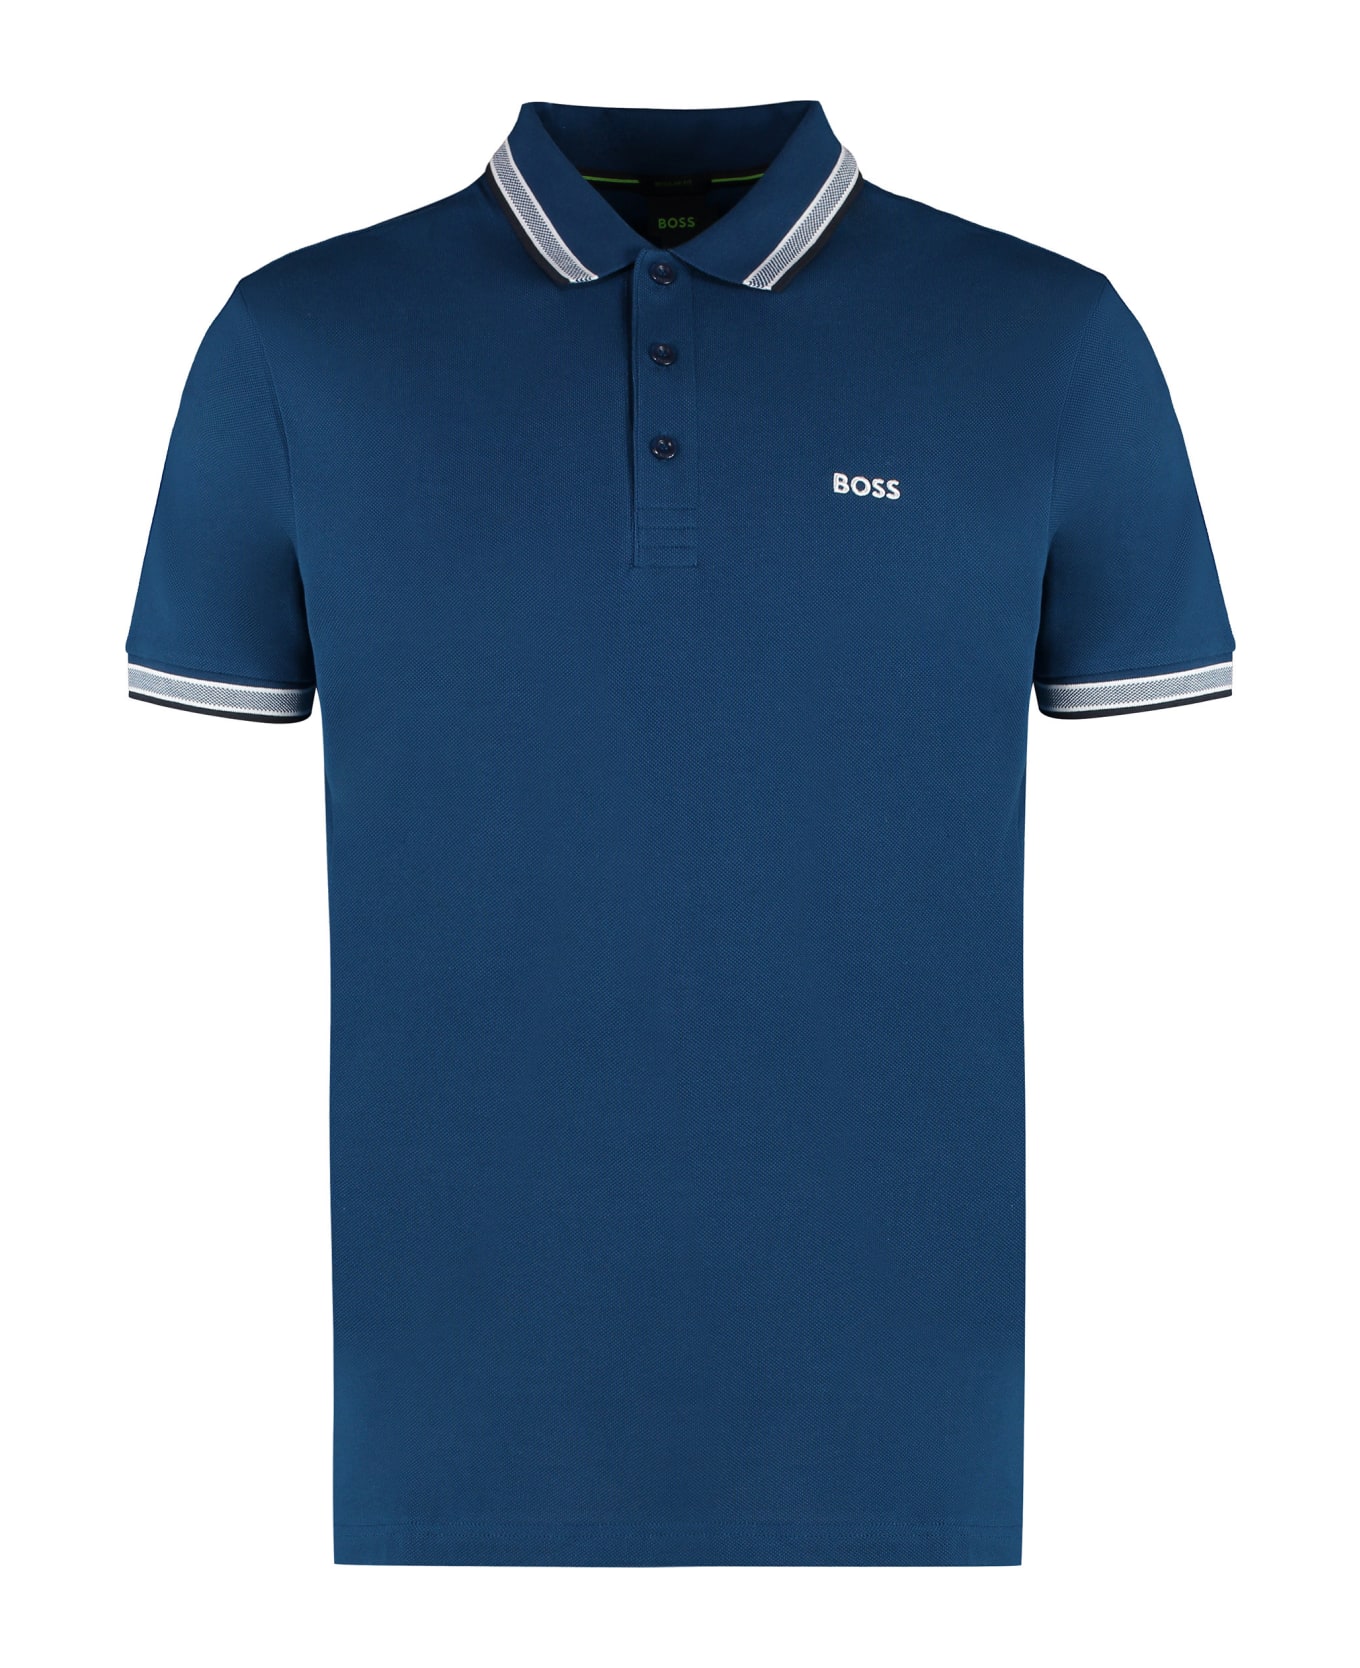 Hugo Boss Short Sleeve Cotton Pique Polo Shirt - Blue